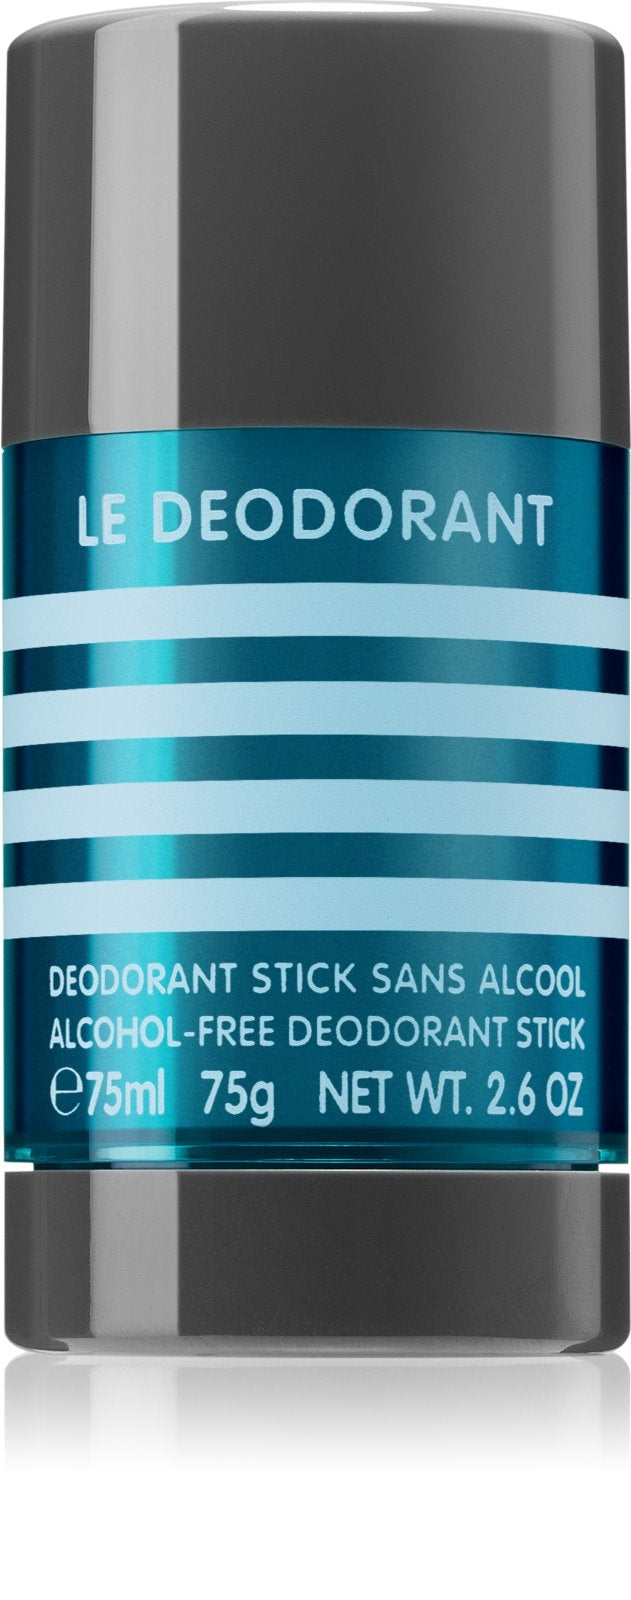 Le Male Stick Deodorant